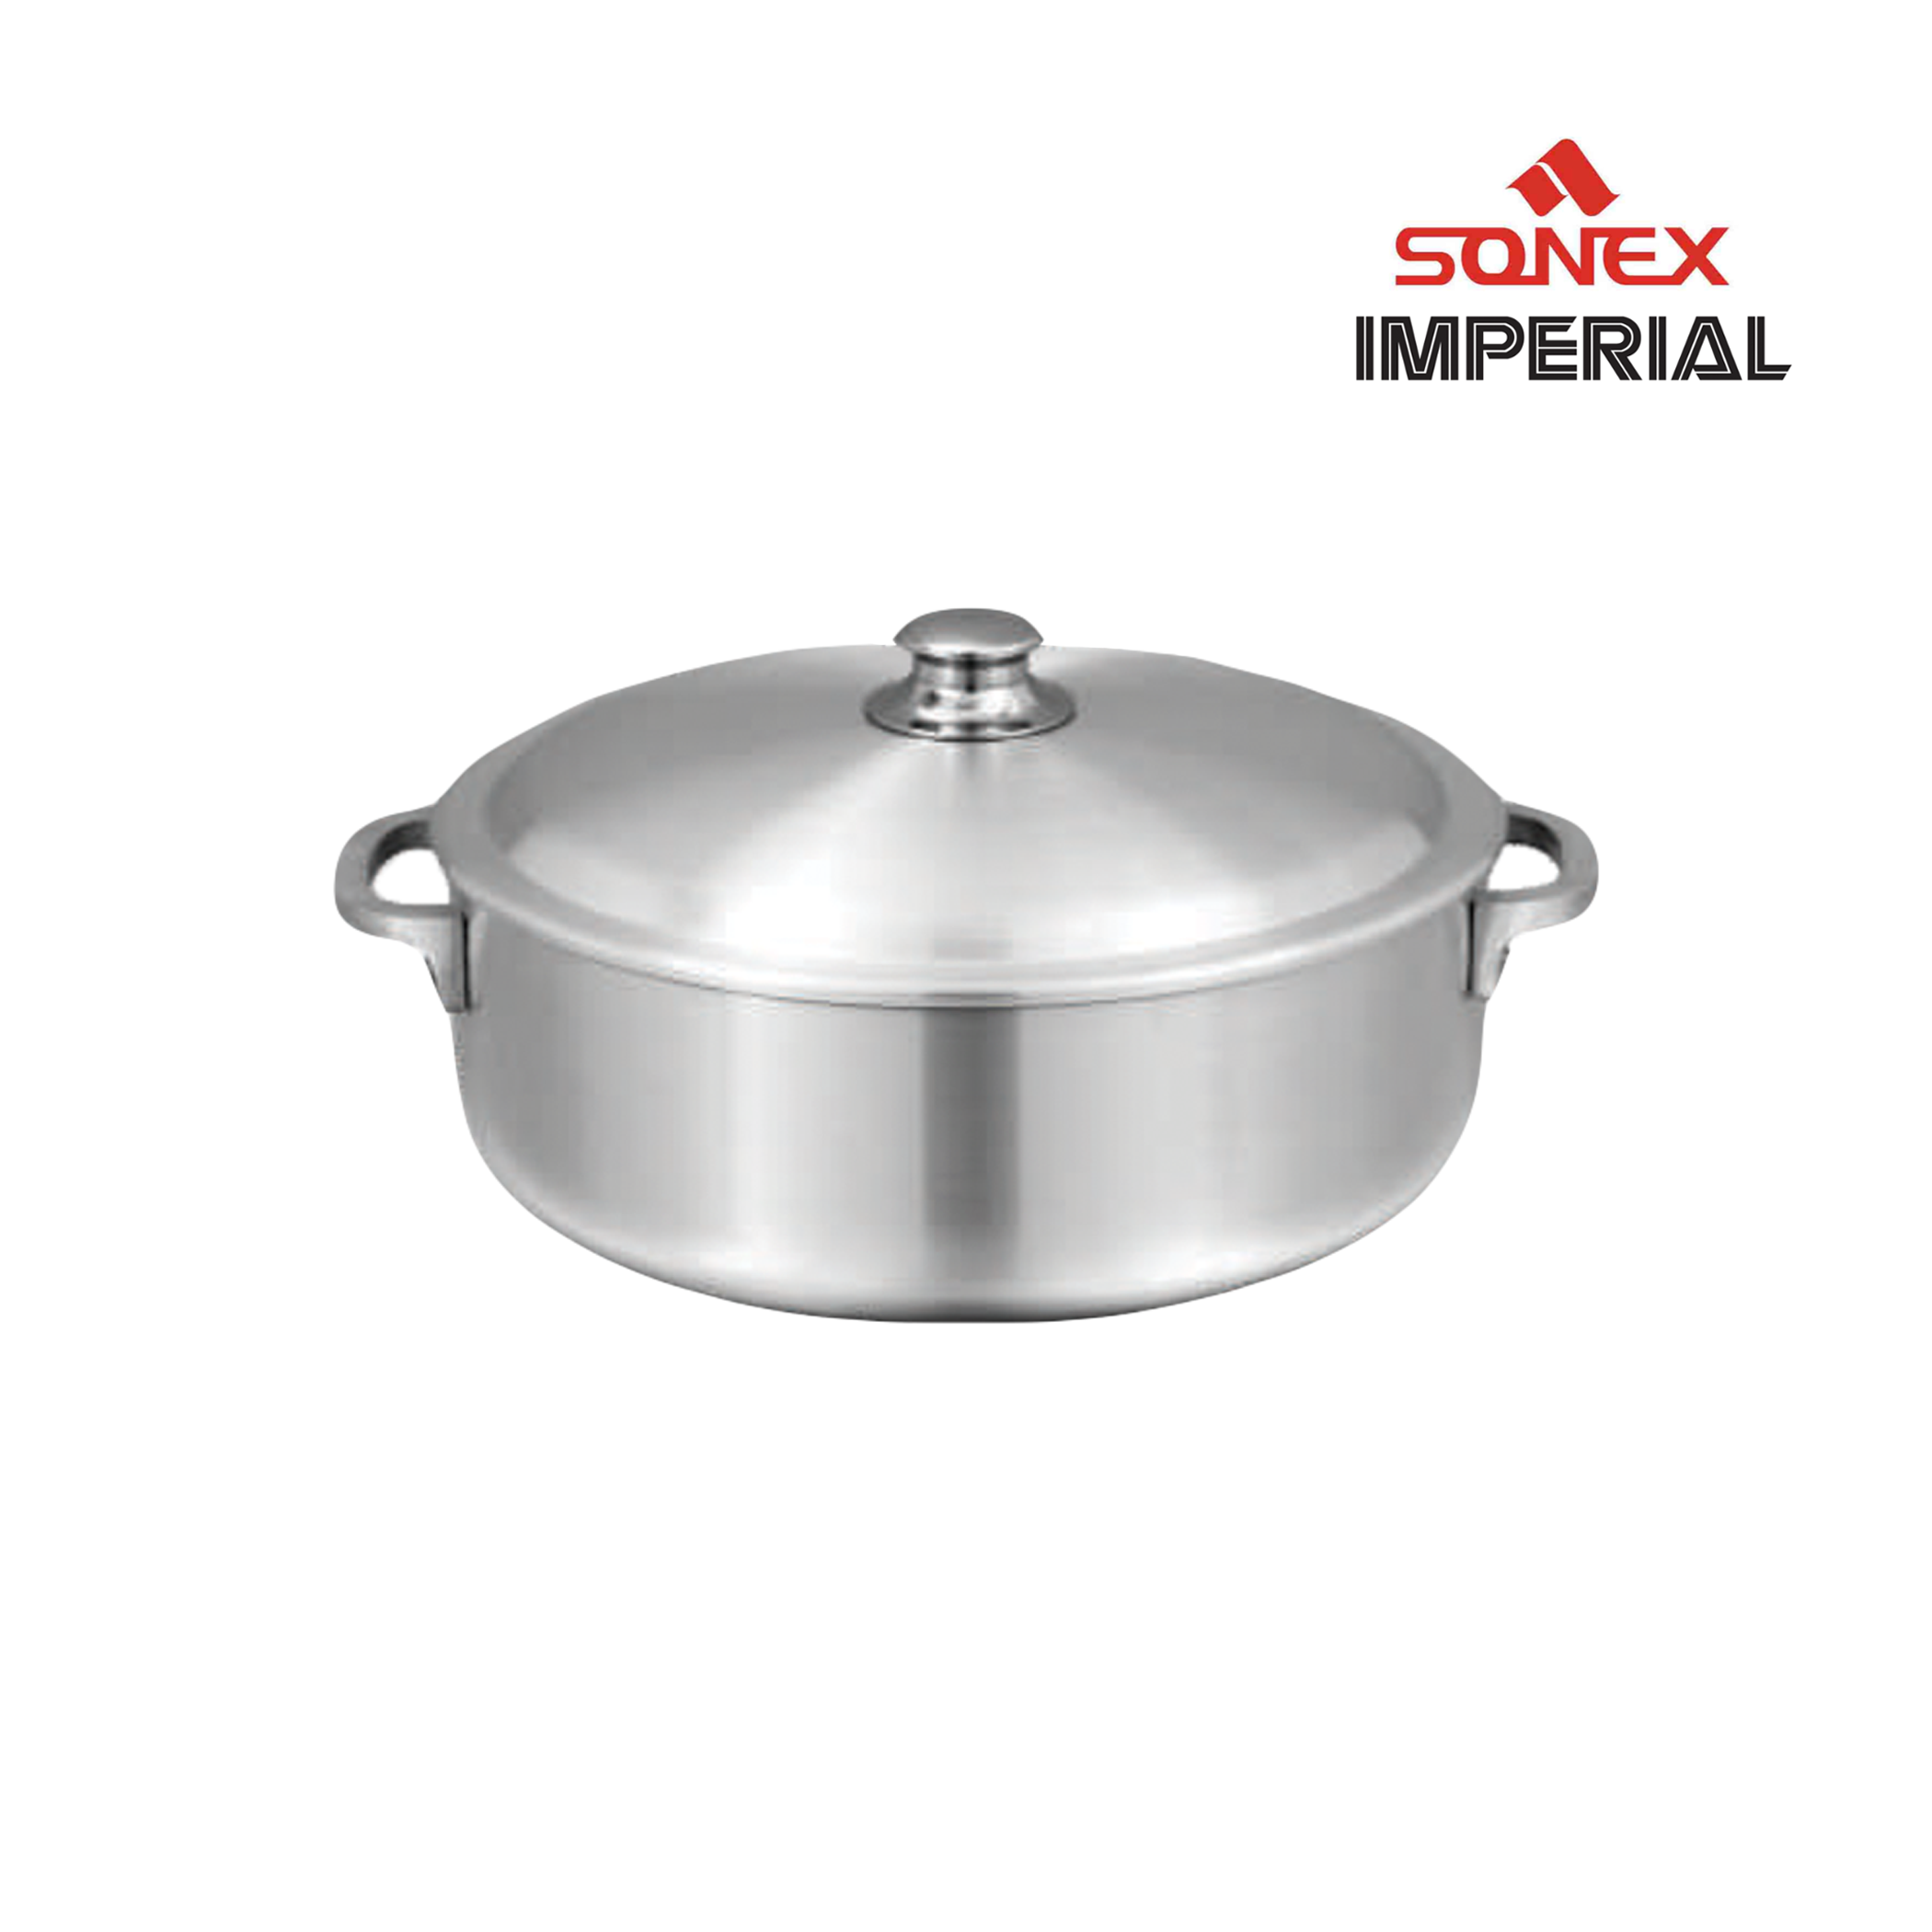 Sonex Imperial Aluminum Pot 4 Liters